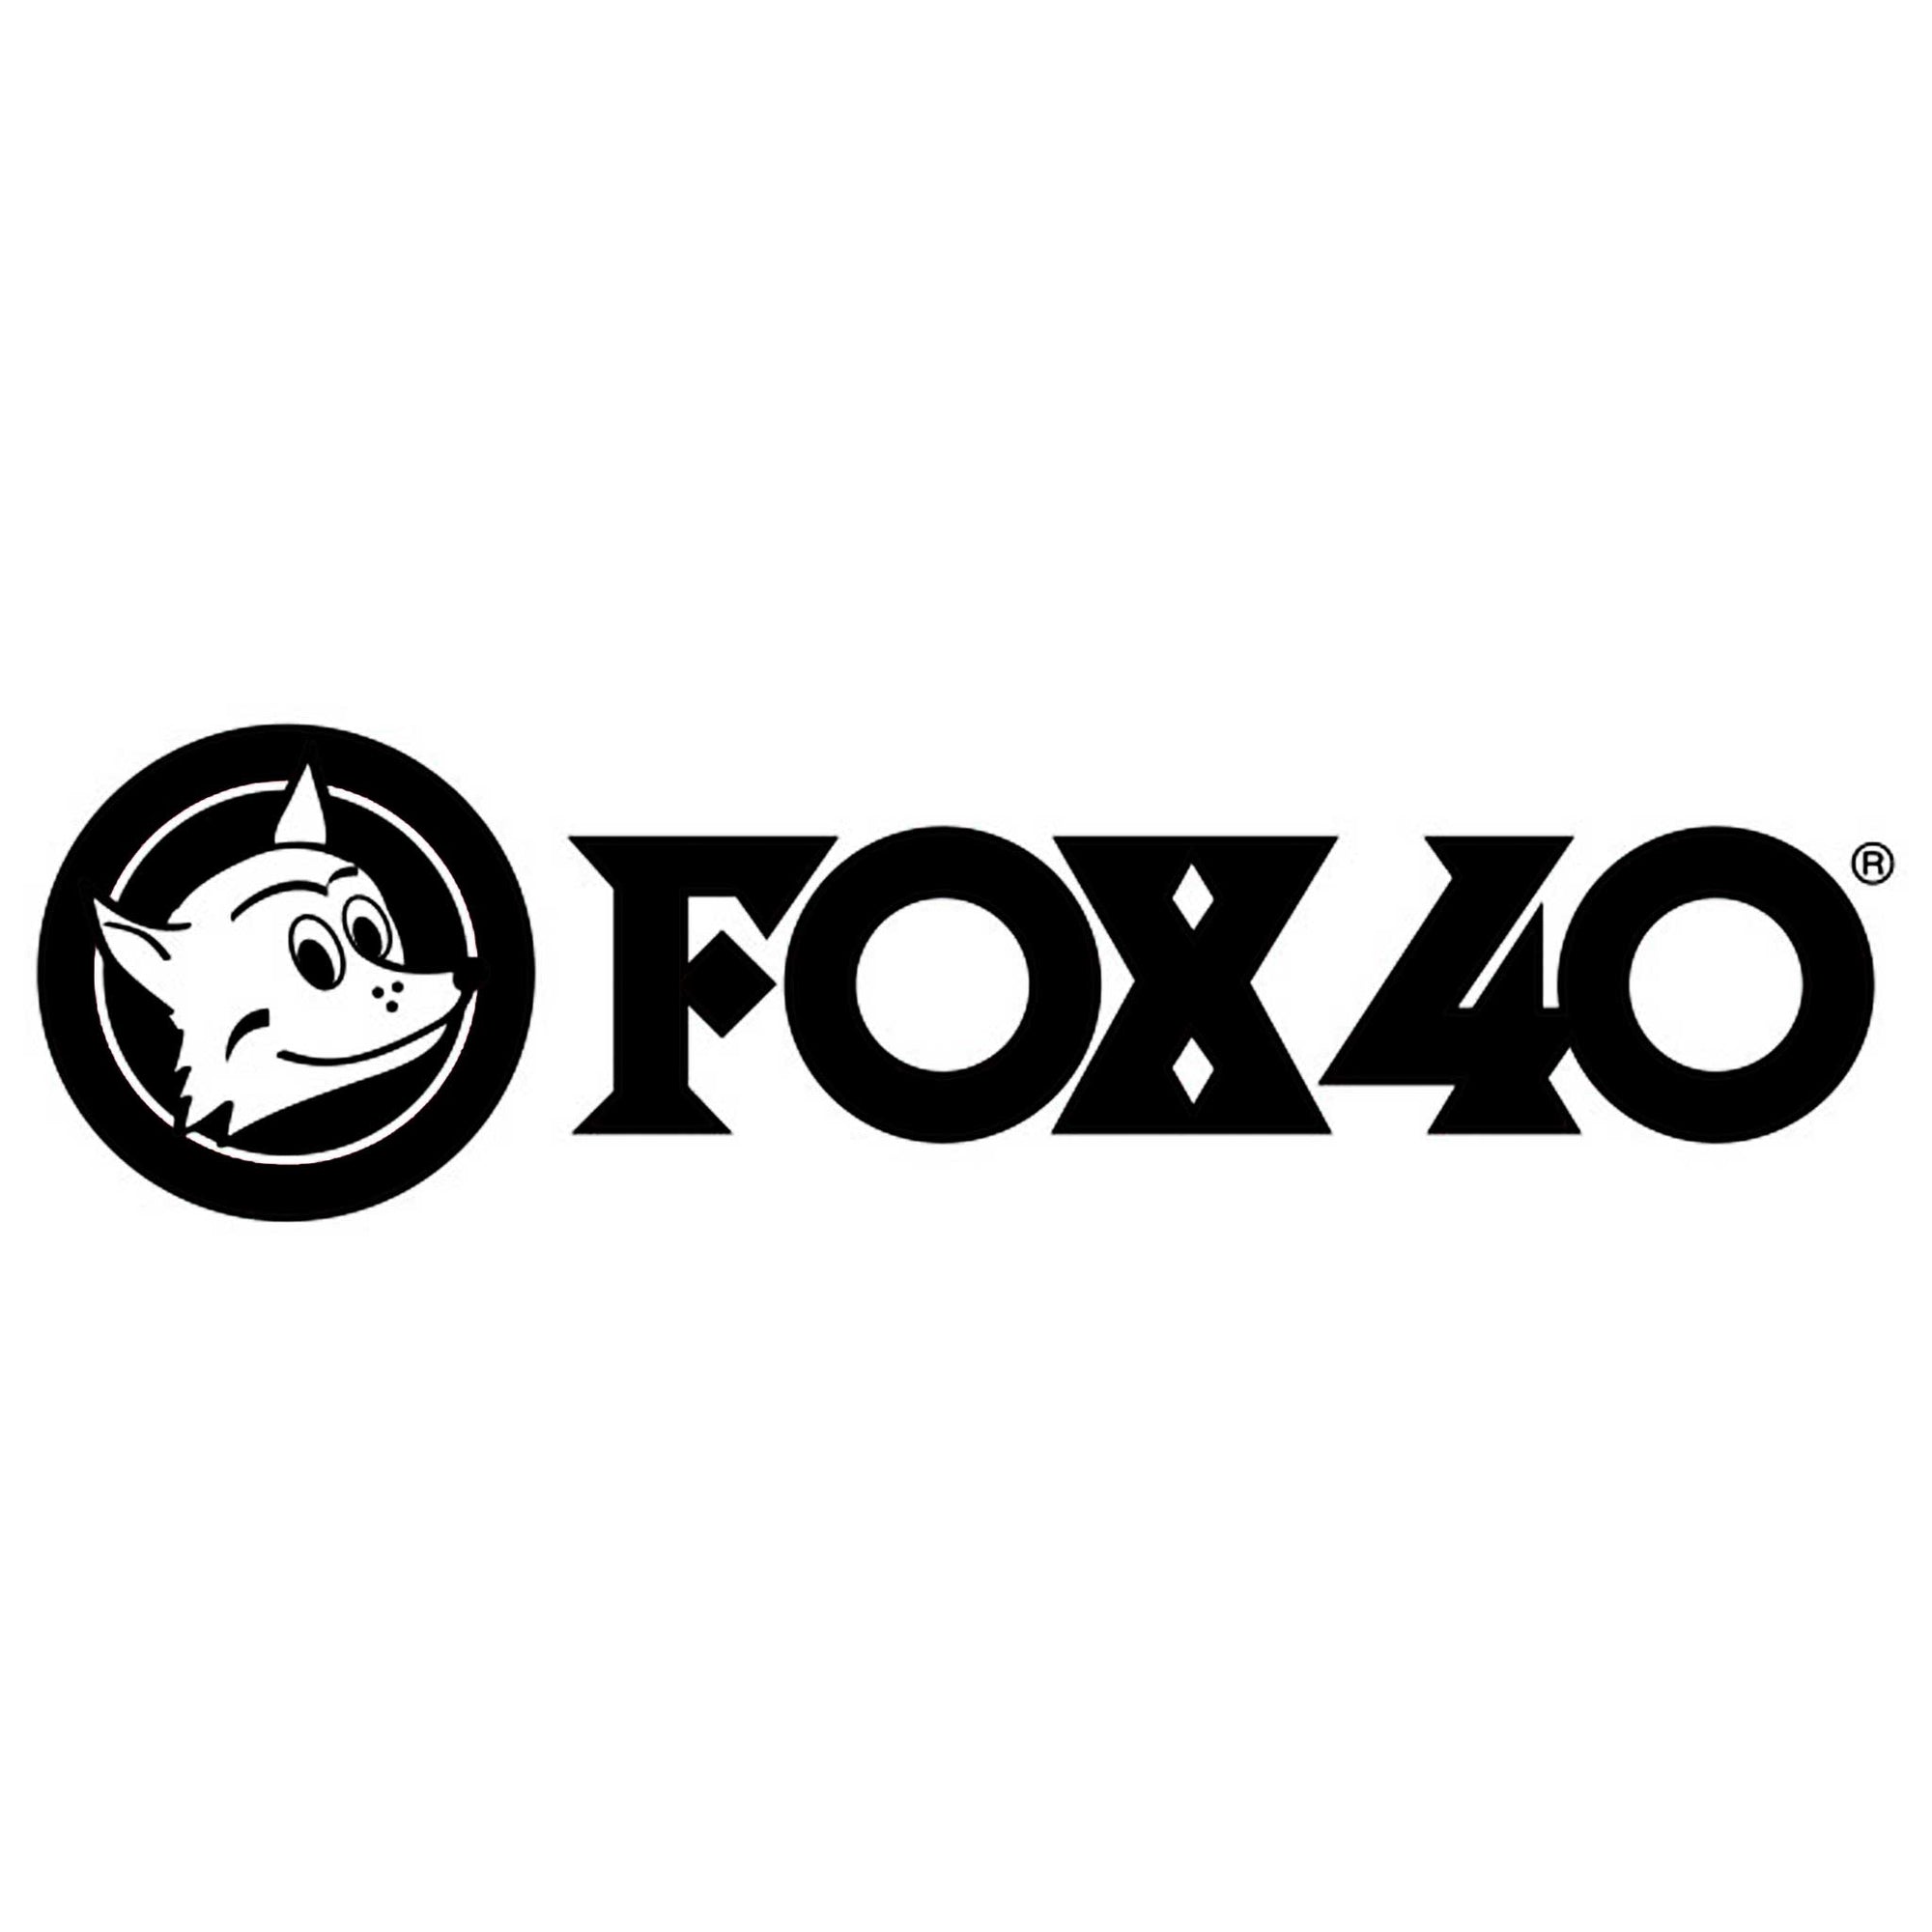 Fox 40 sifflets d'arbitres, tableaux et accessoires d'arbitrage et coaching